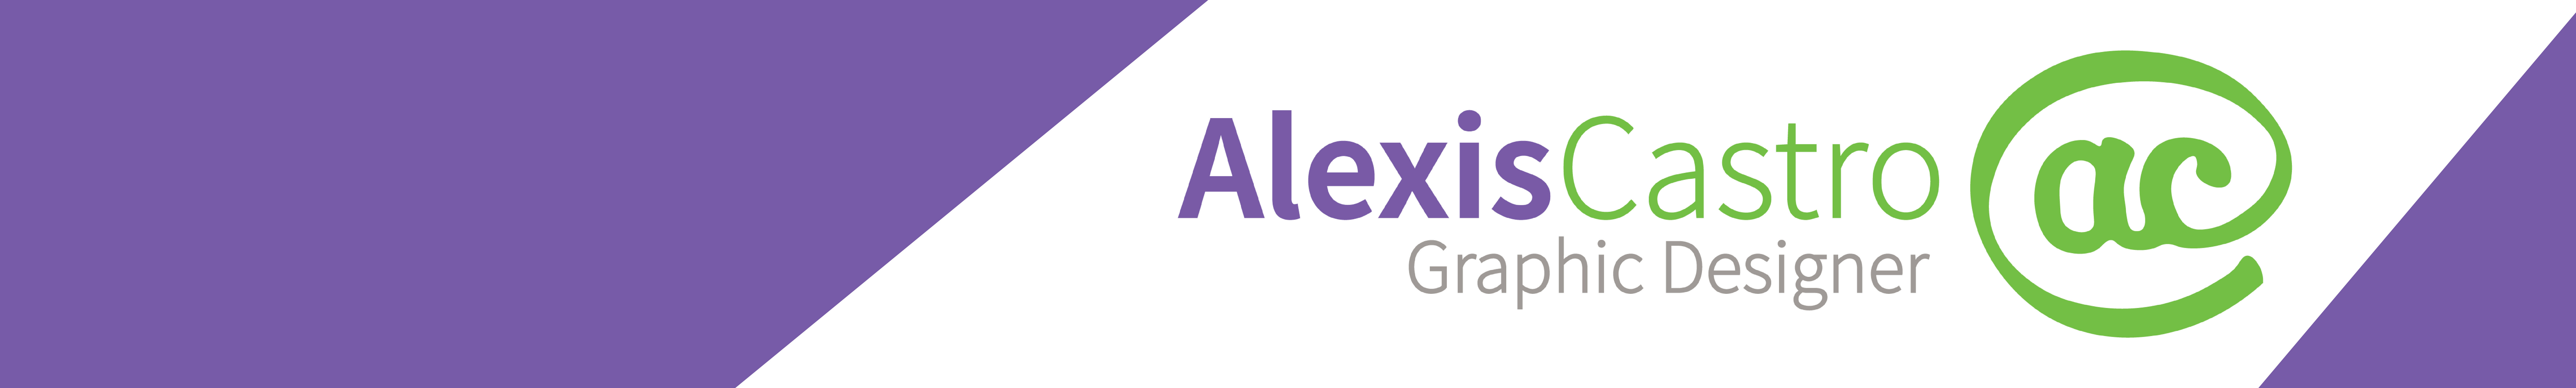 Alexis Castro's profile banner